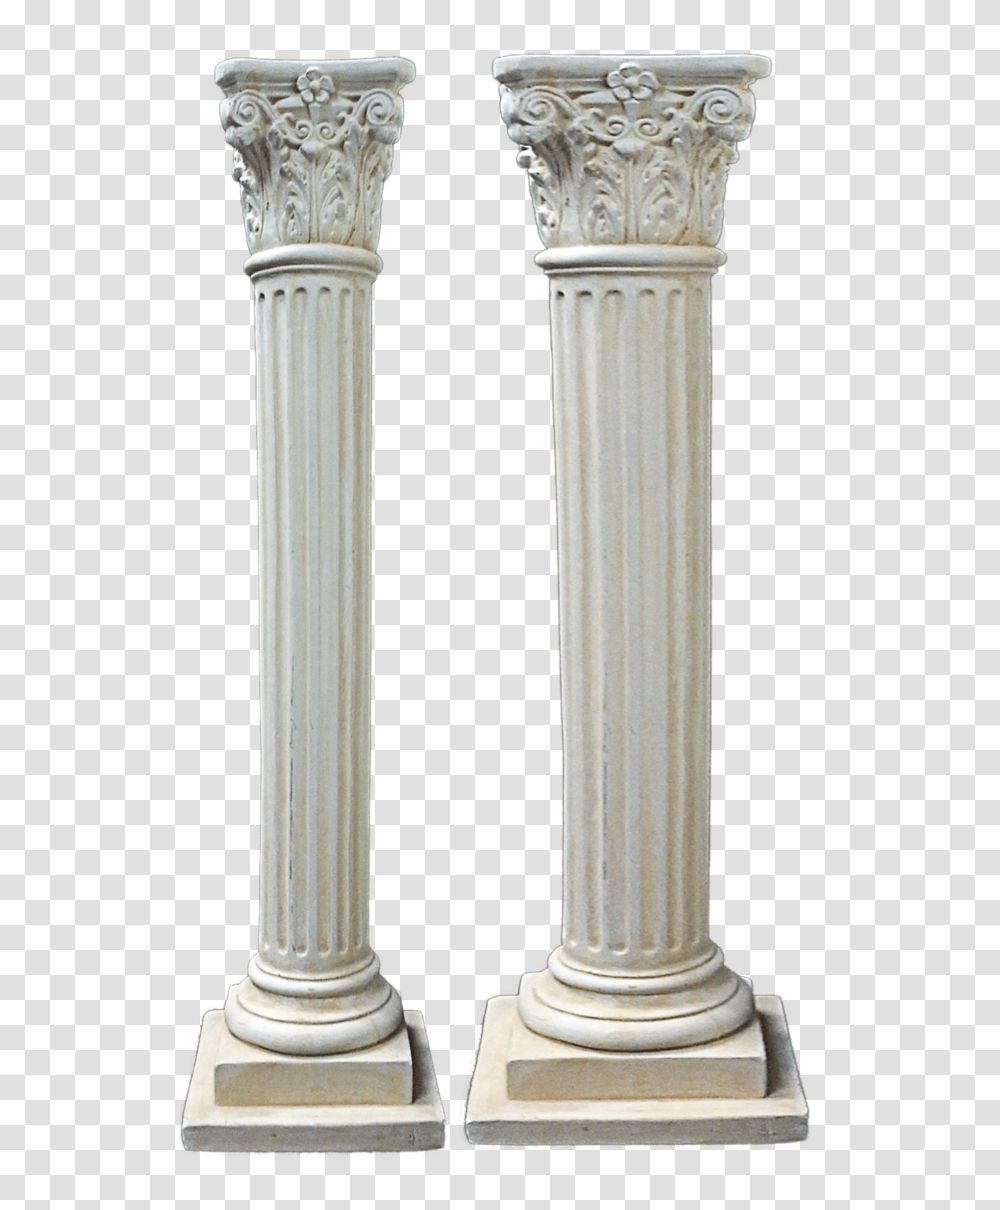 Column, Architecture, Building, Pillar, Sink Faucet Transparent Png